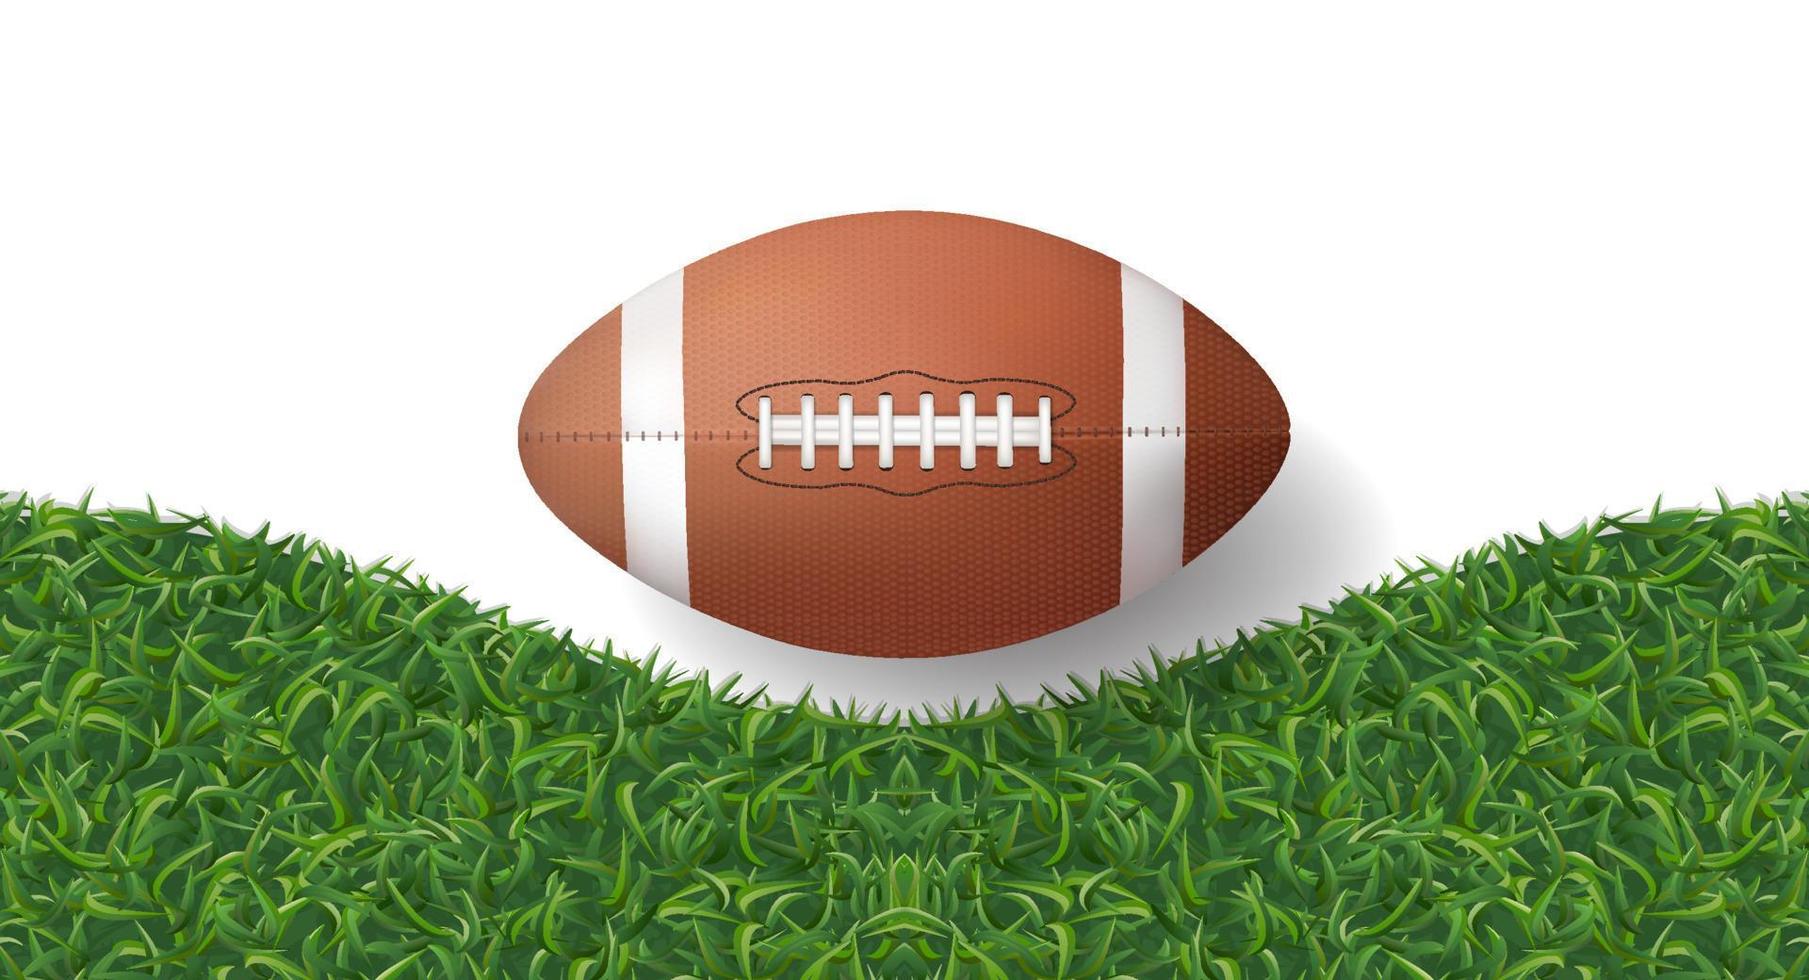 amerikansk fotboll boll med grönt gräs textur bakgrund. vektor. vektor